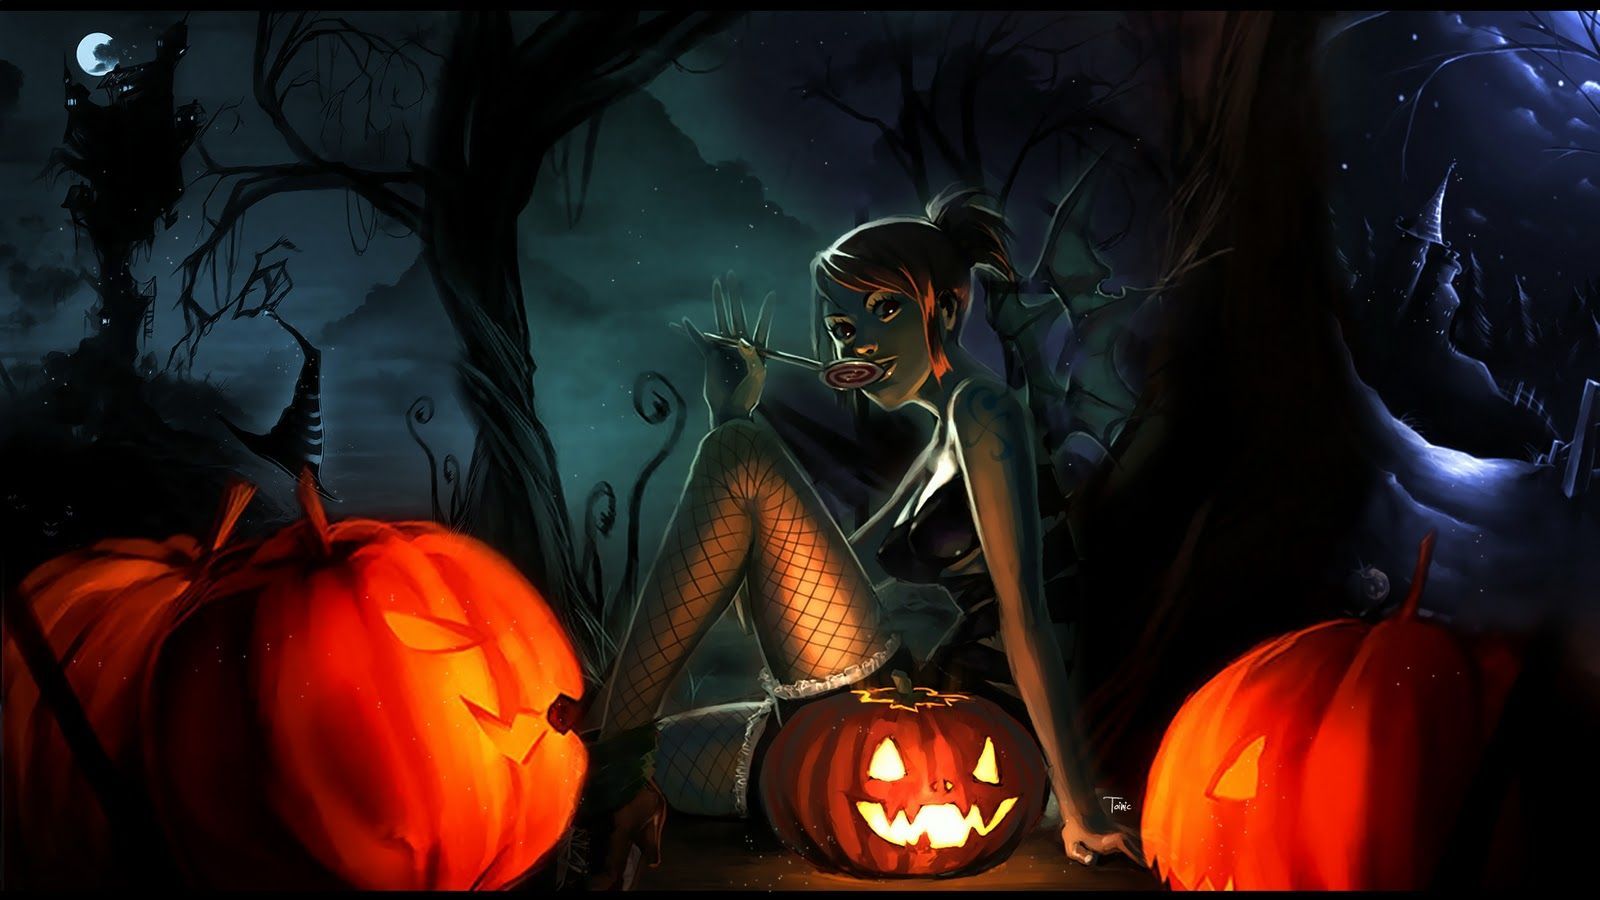 Creepy Halloween Background